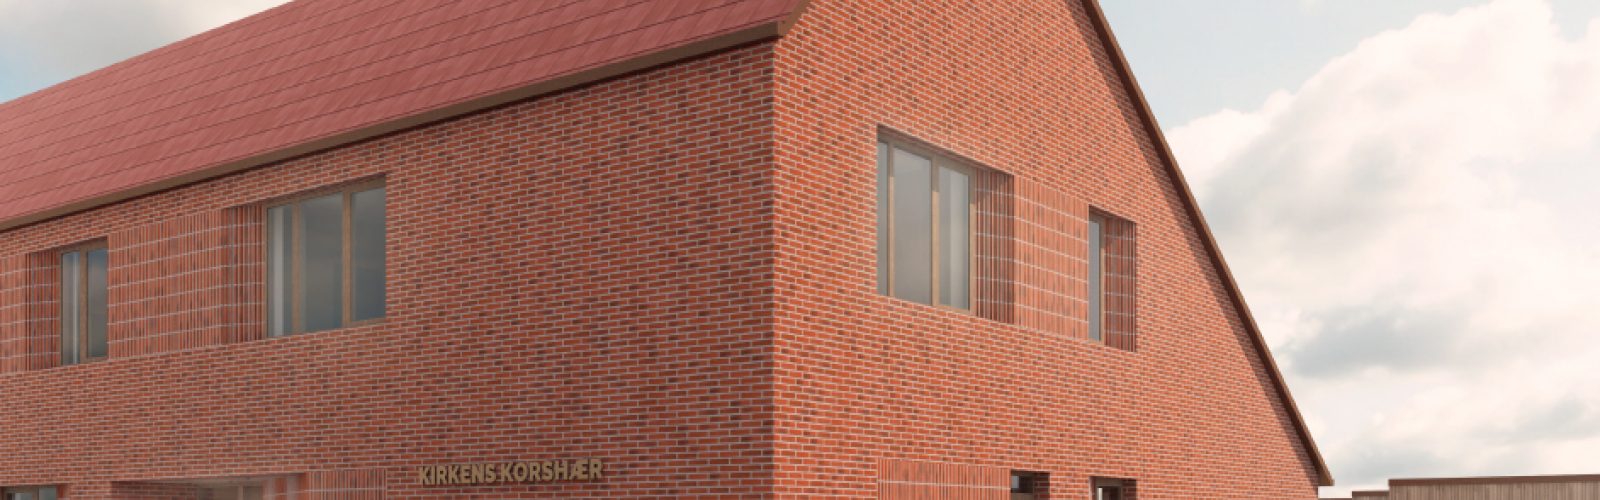 Facaden på Kirkens Korshærs nye varmestue i Esbjerg, som er del af projektet 'Sociale mursten - fremtidens væresteder'